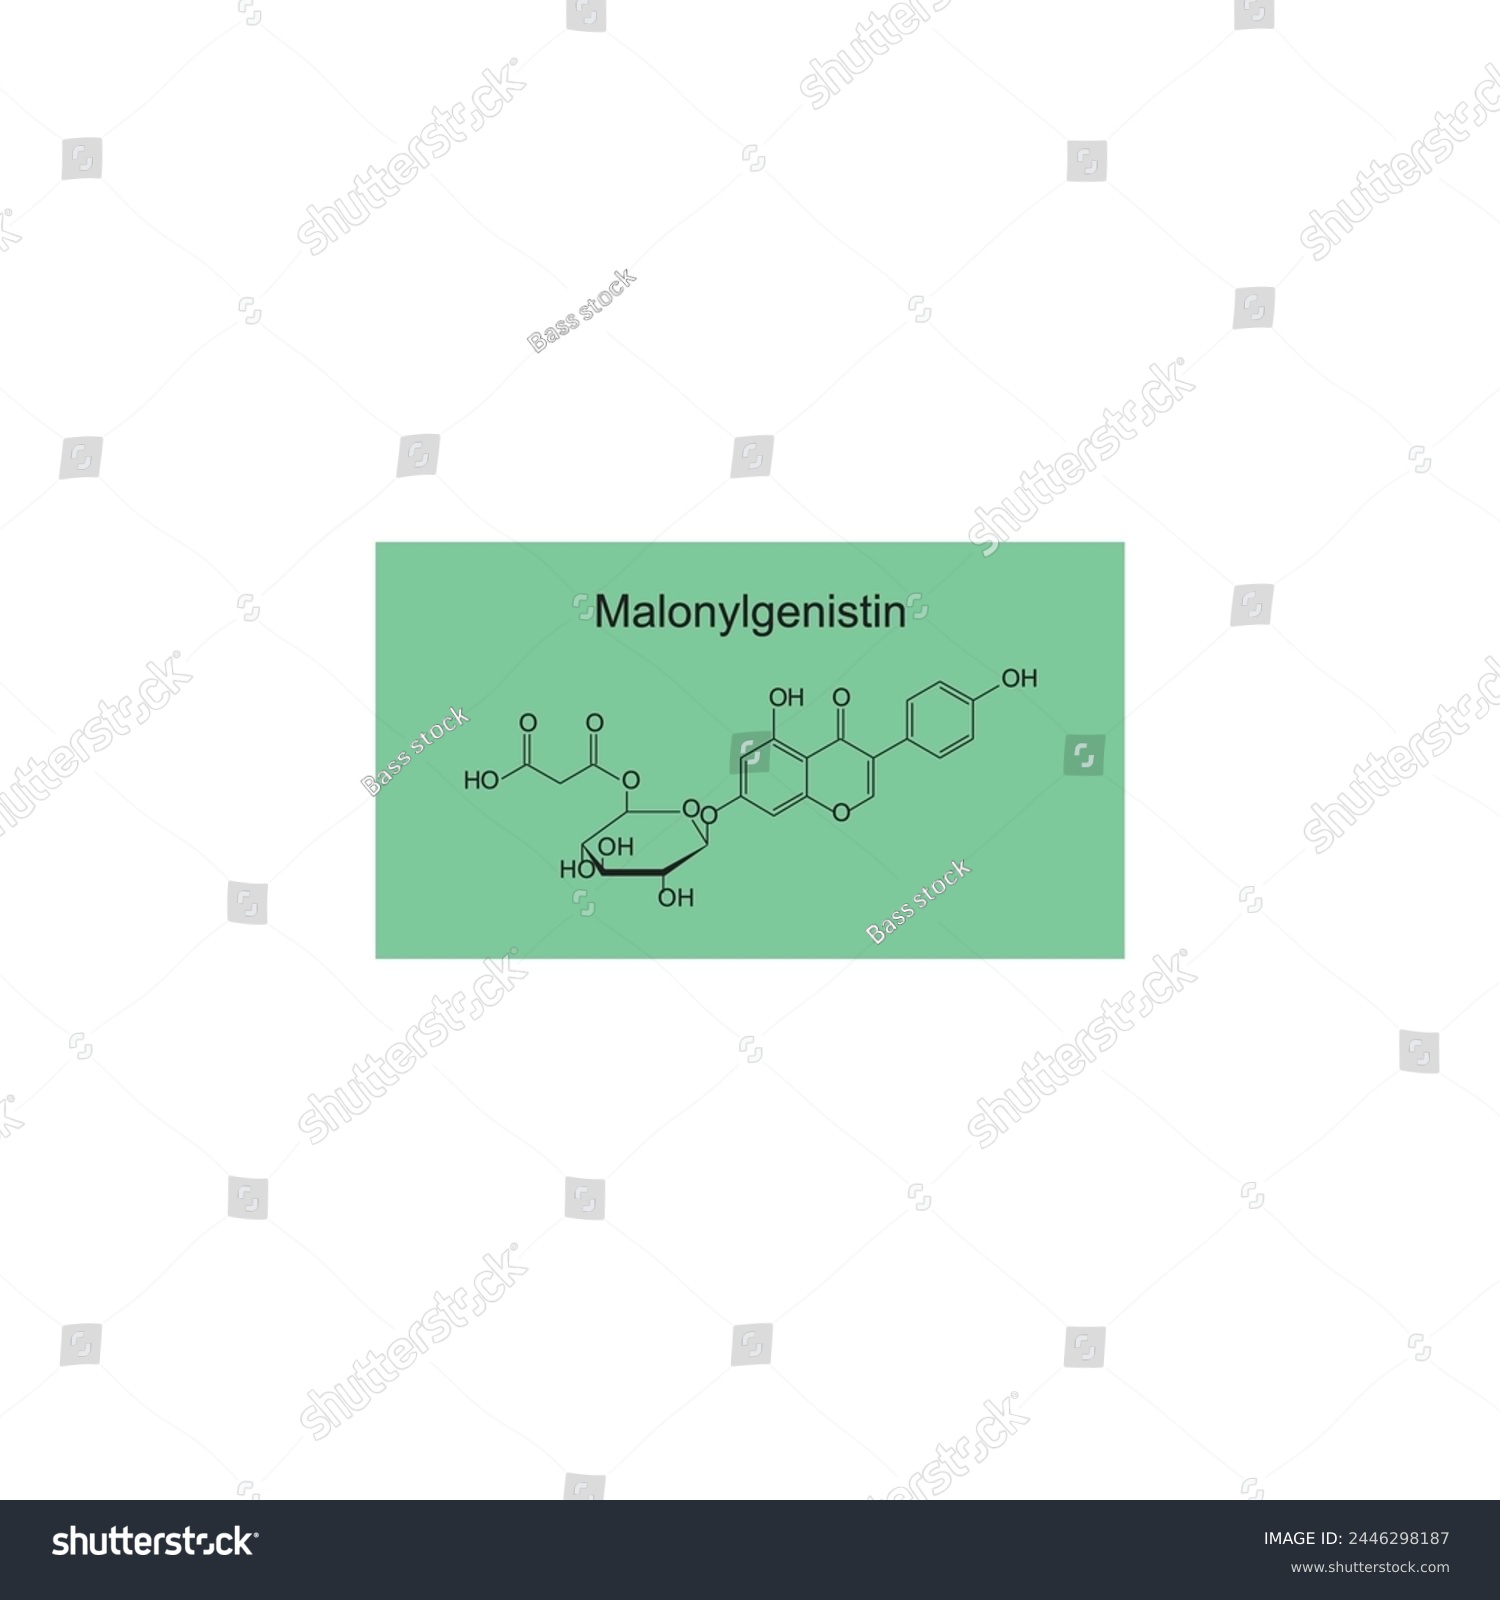 SVG of Malonyldaidzin skeletal structure diagram.Isoflavanone compound molecule scientific illustration on green background. svg